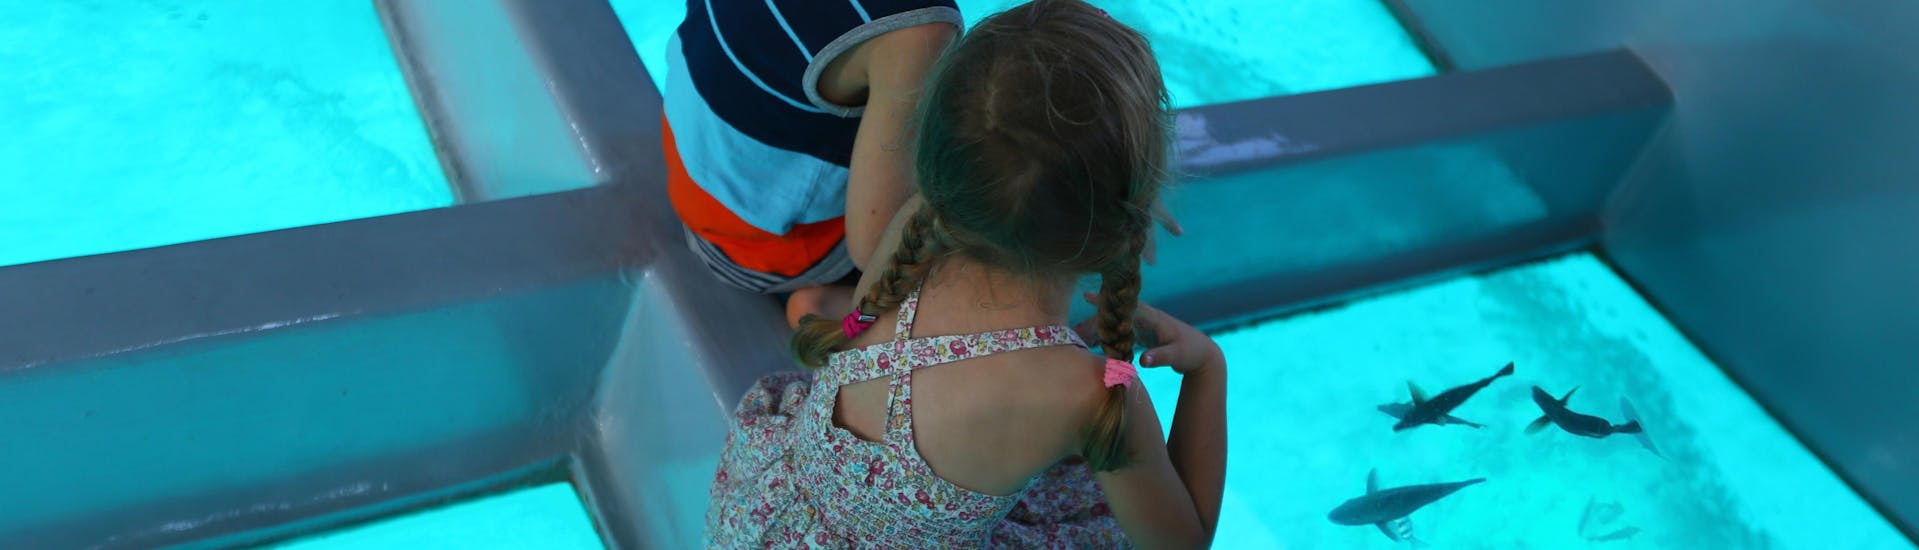 Deux enfants observant les fonds marins lors d'une excursion en bateau à fond de verre.